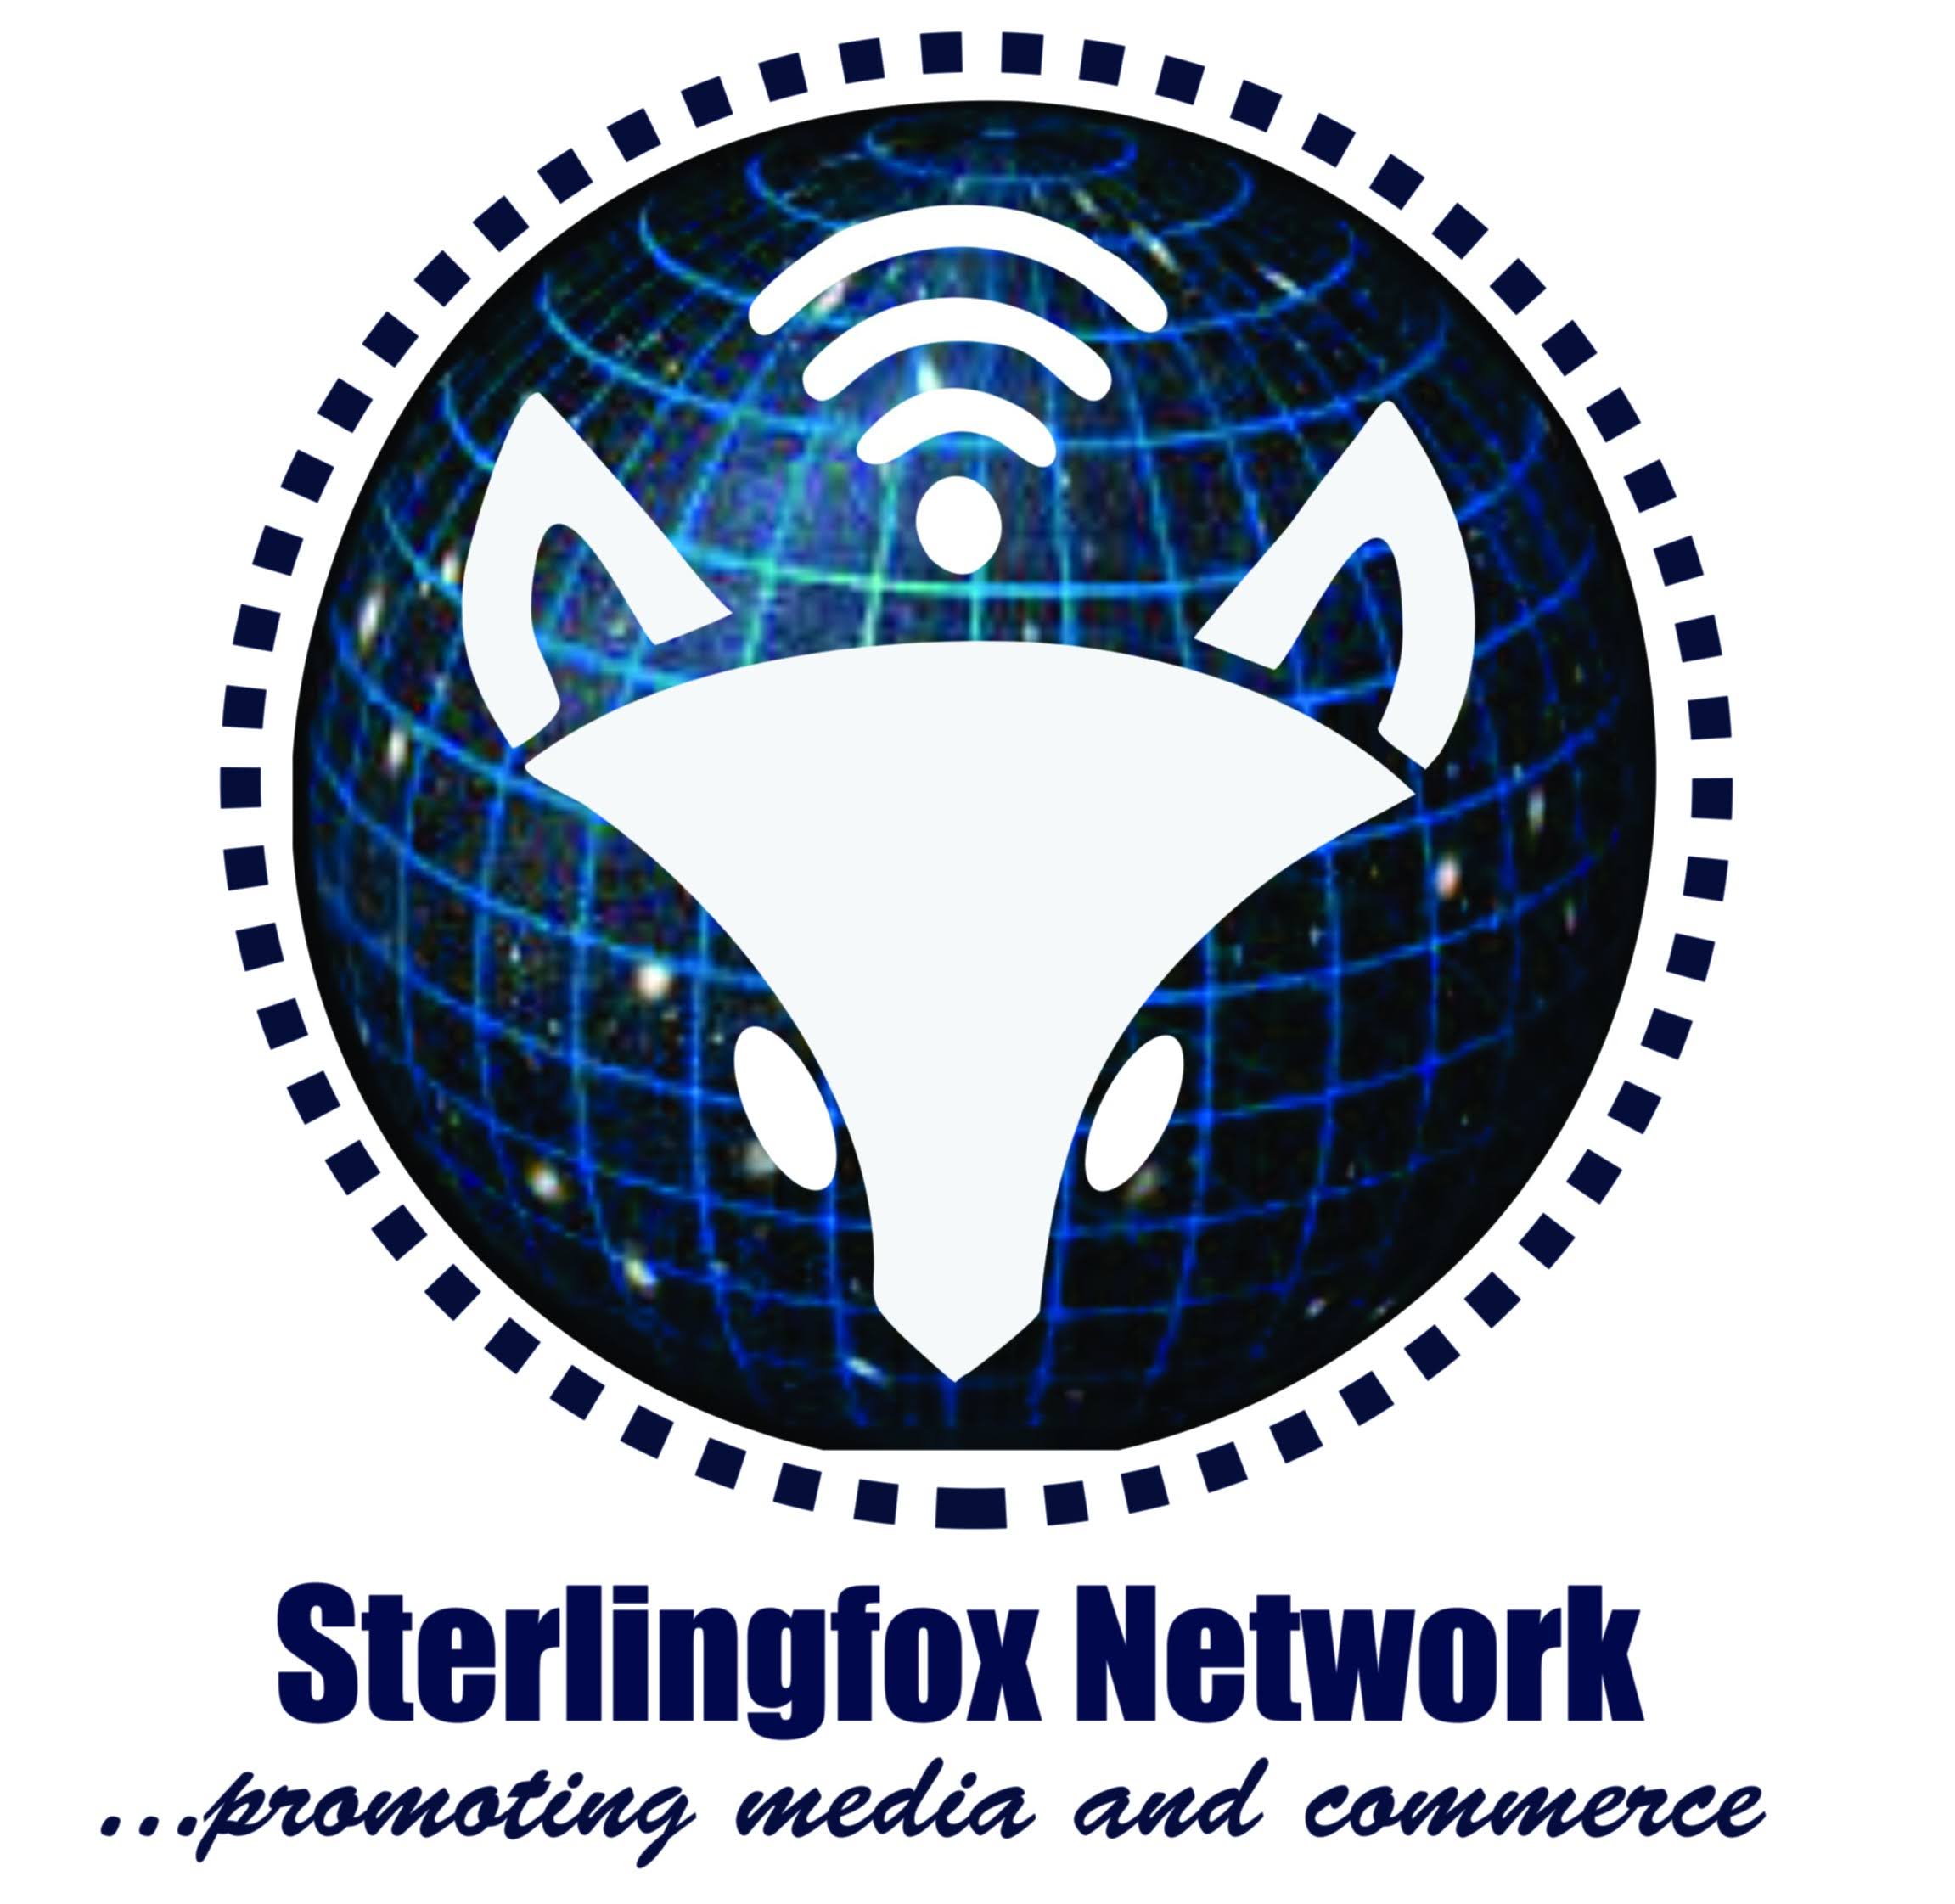 For Sterlingfox Network